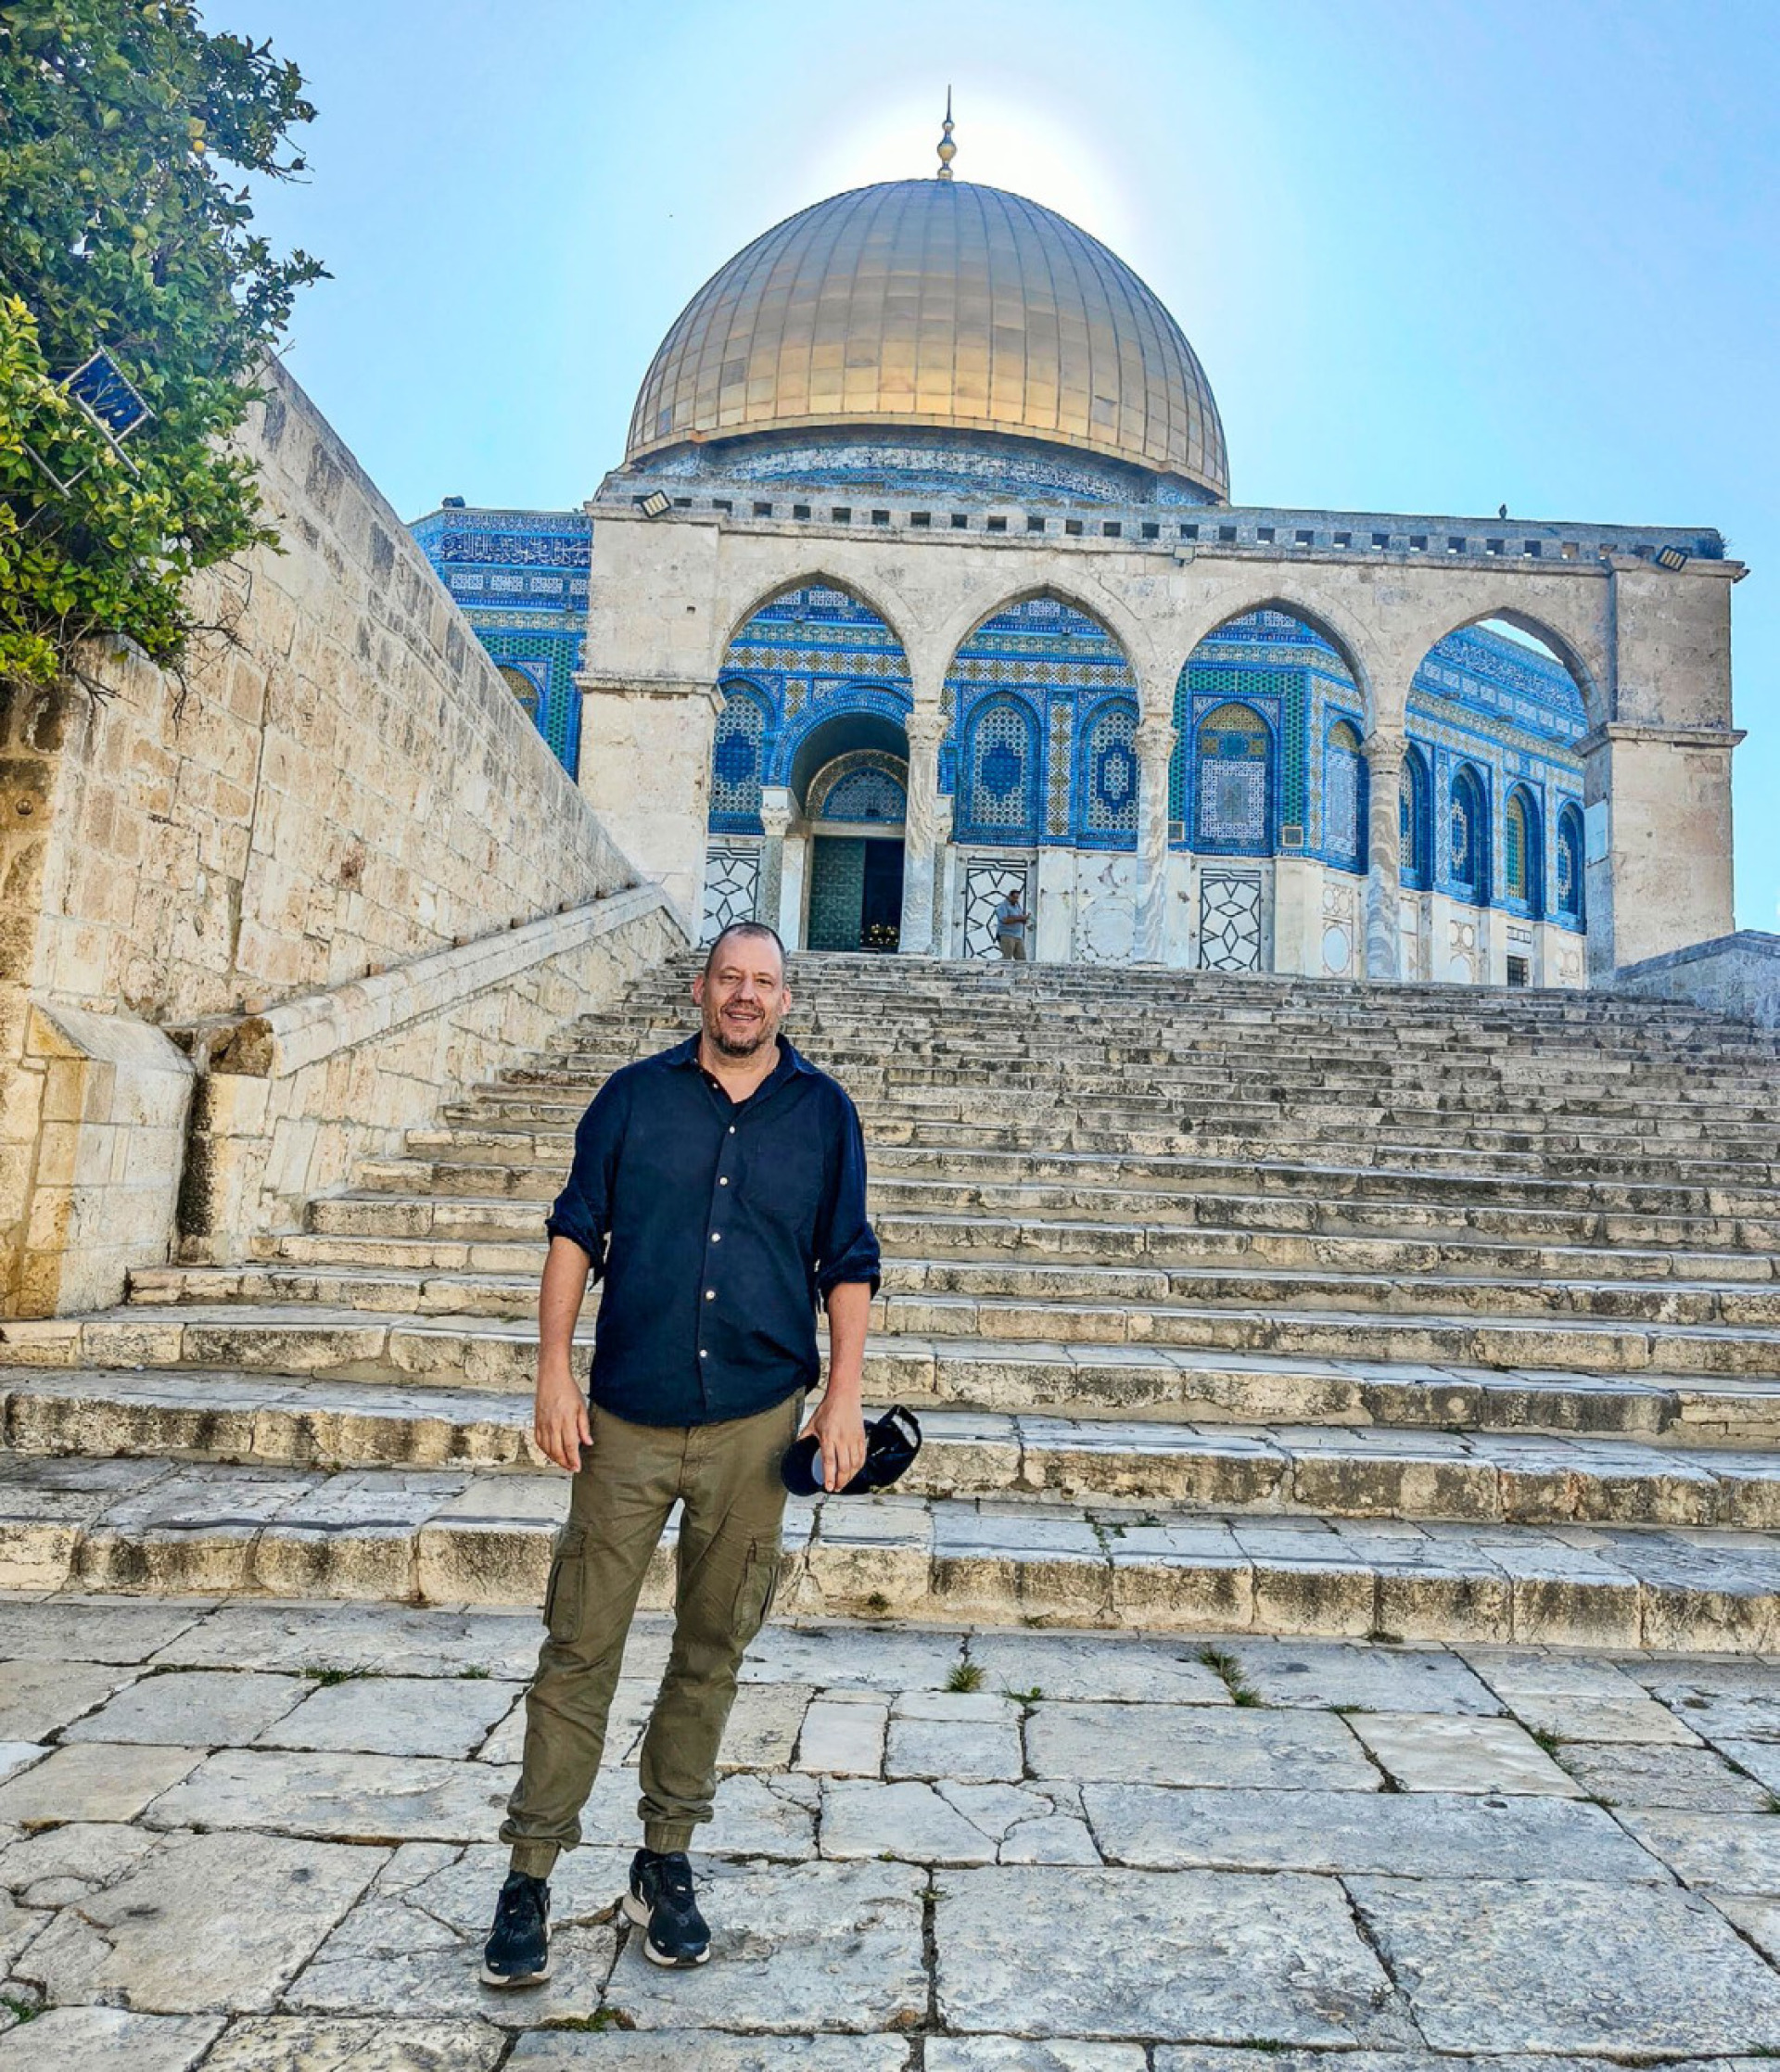 Adrian Furrer vor dem Felsendom auf dem Tempelberg in Jerusalem. Die Stätte ist dem Judentum, dem Christentum und dem Islam heilig. Sie ist immer wieder Schauplatz von Provokationen und auch von Gewalttaten. BILD: ZVG / ADRIAN FURRER